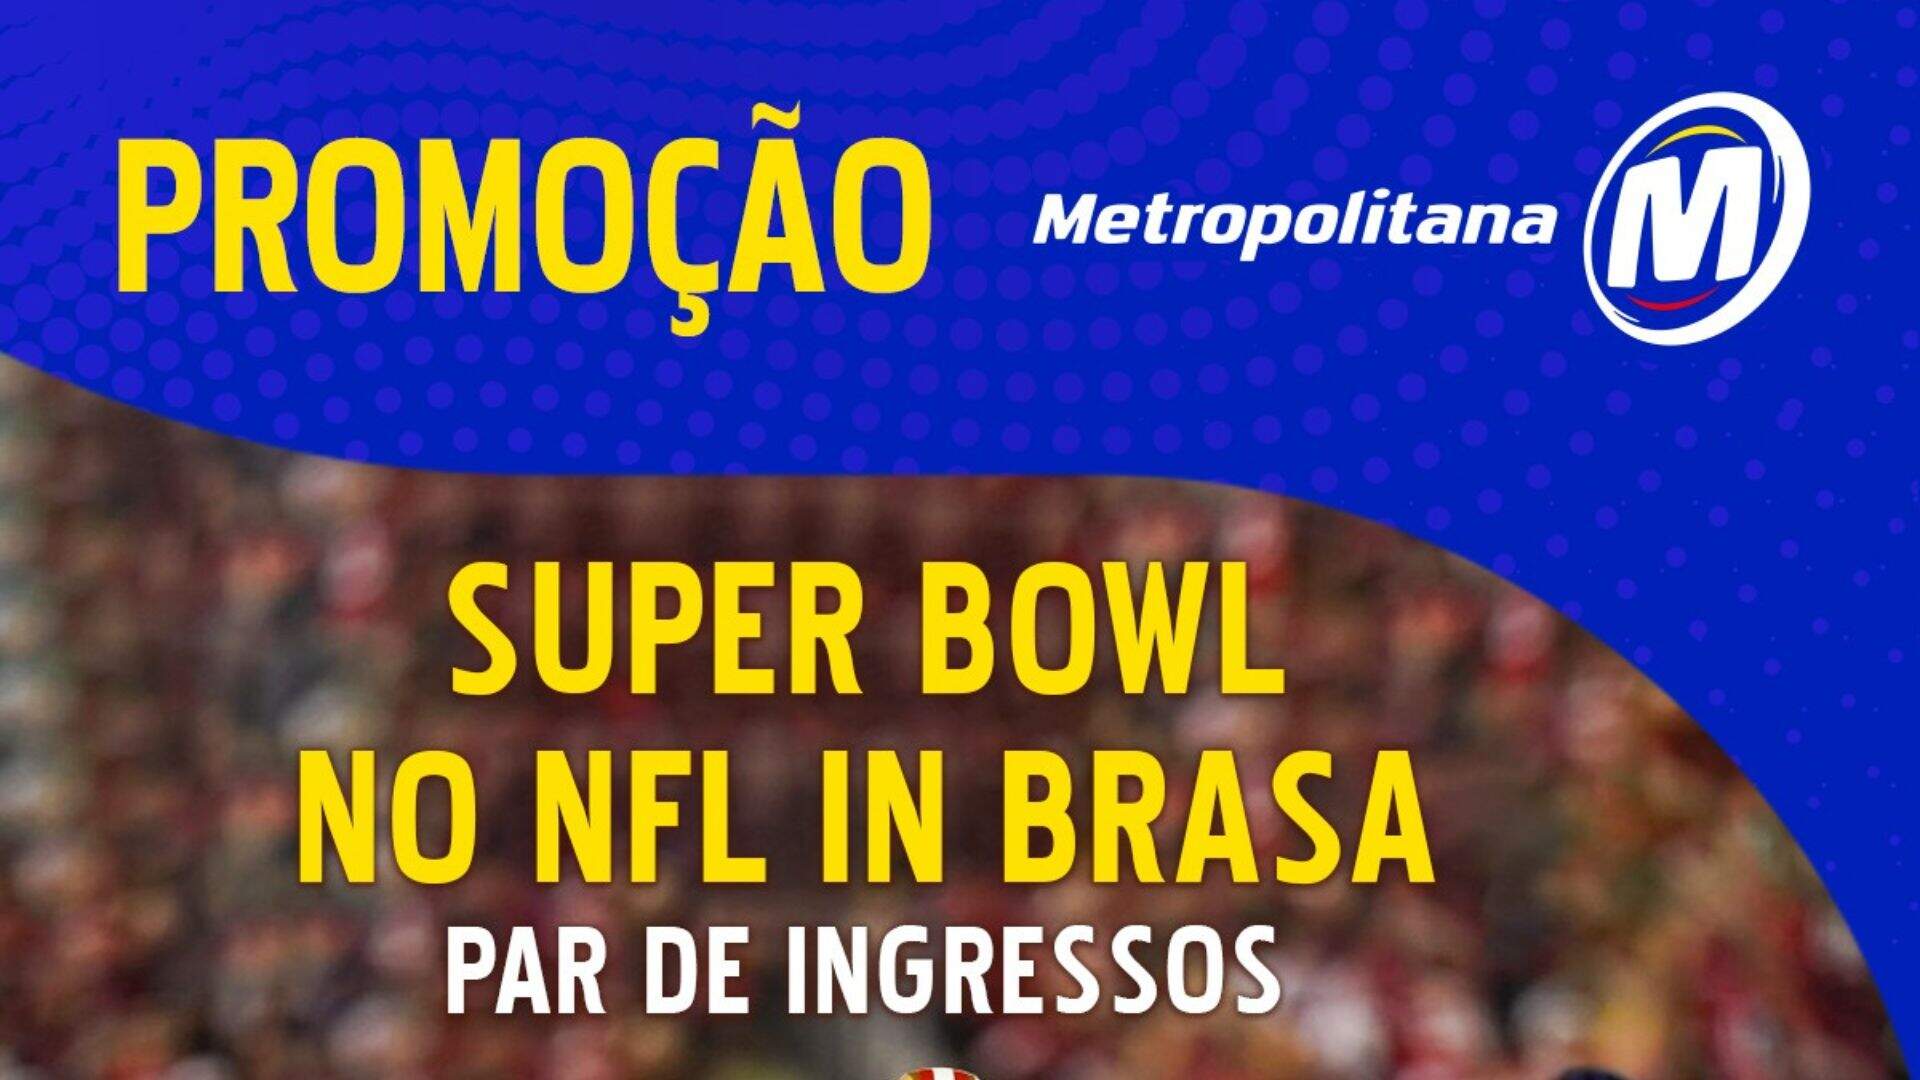 [ENCERRADA] Promoção: SUPER BOWL NO NFL IN BRASA É NA METROPOLITANA - Metropolitana FM